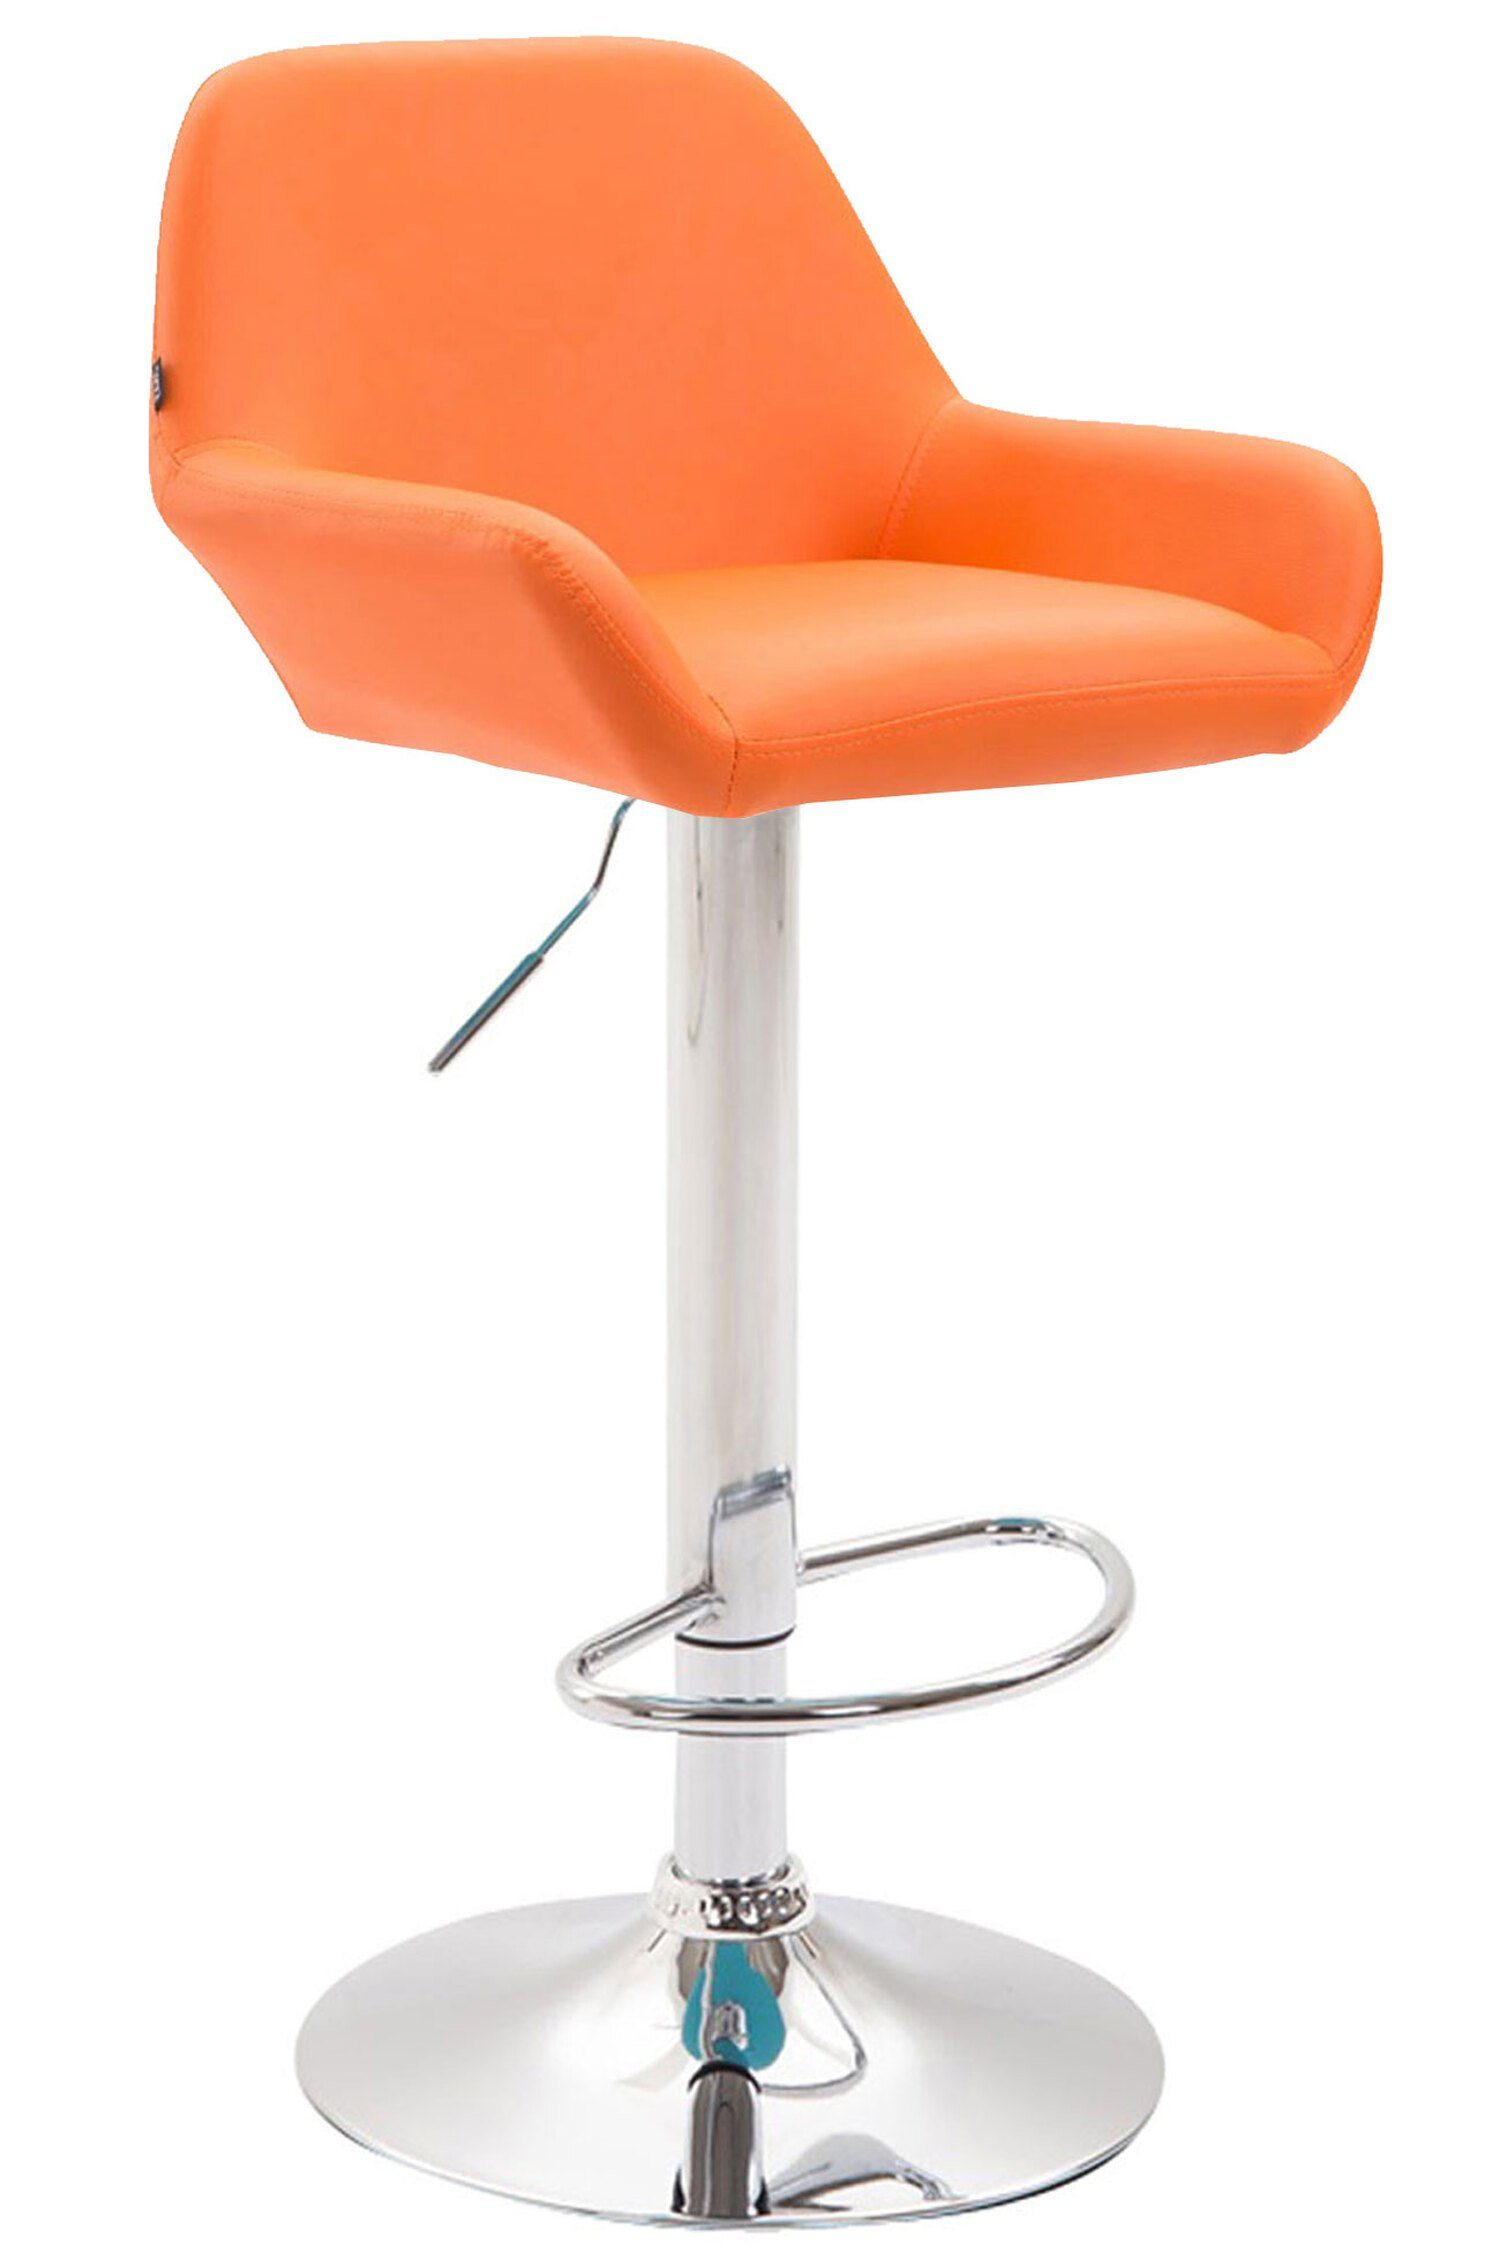 TPFLiving Barhocker Bragnum mit bequemer Rückenlehne und angenehmer Fußstütze (Barstuhl Hocker für Theke & Küche - Sitzfläche 360° drehbar), Gestell Metall mit Chromoptik - Sitzfläche: Kunstleder Orange